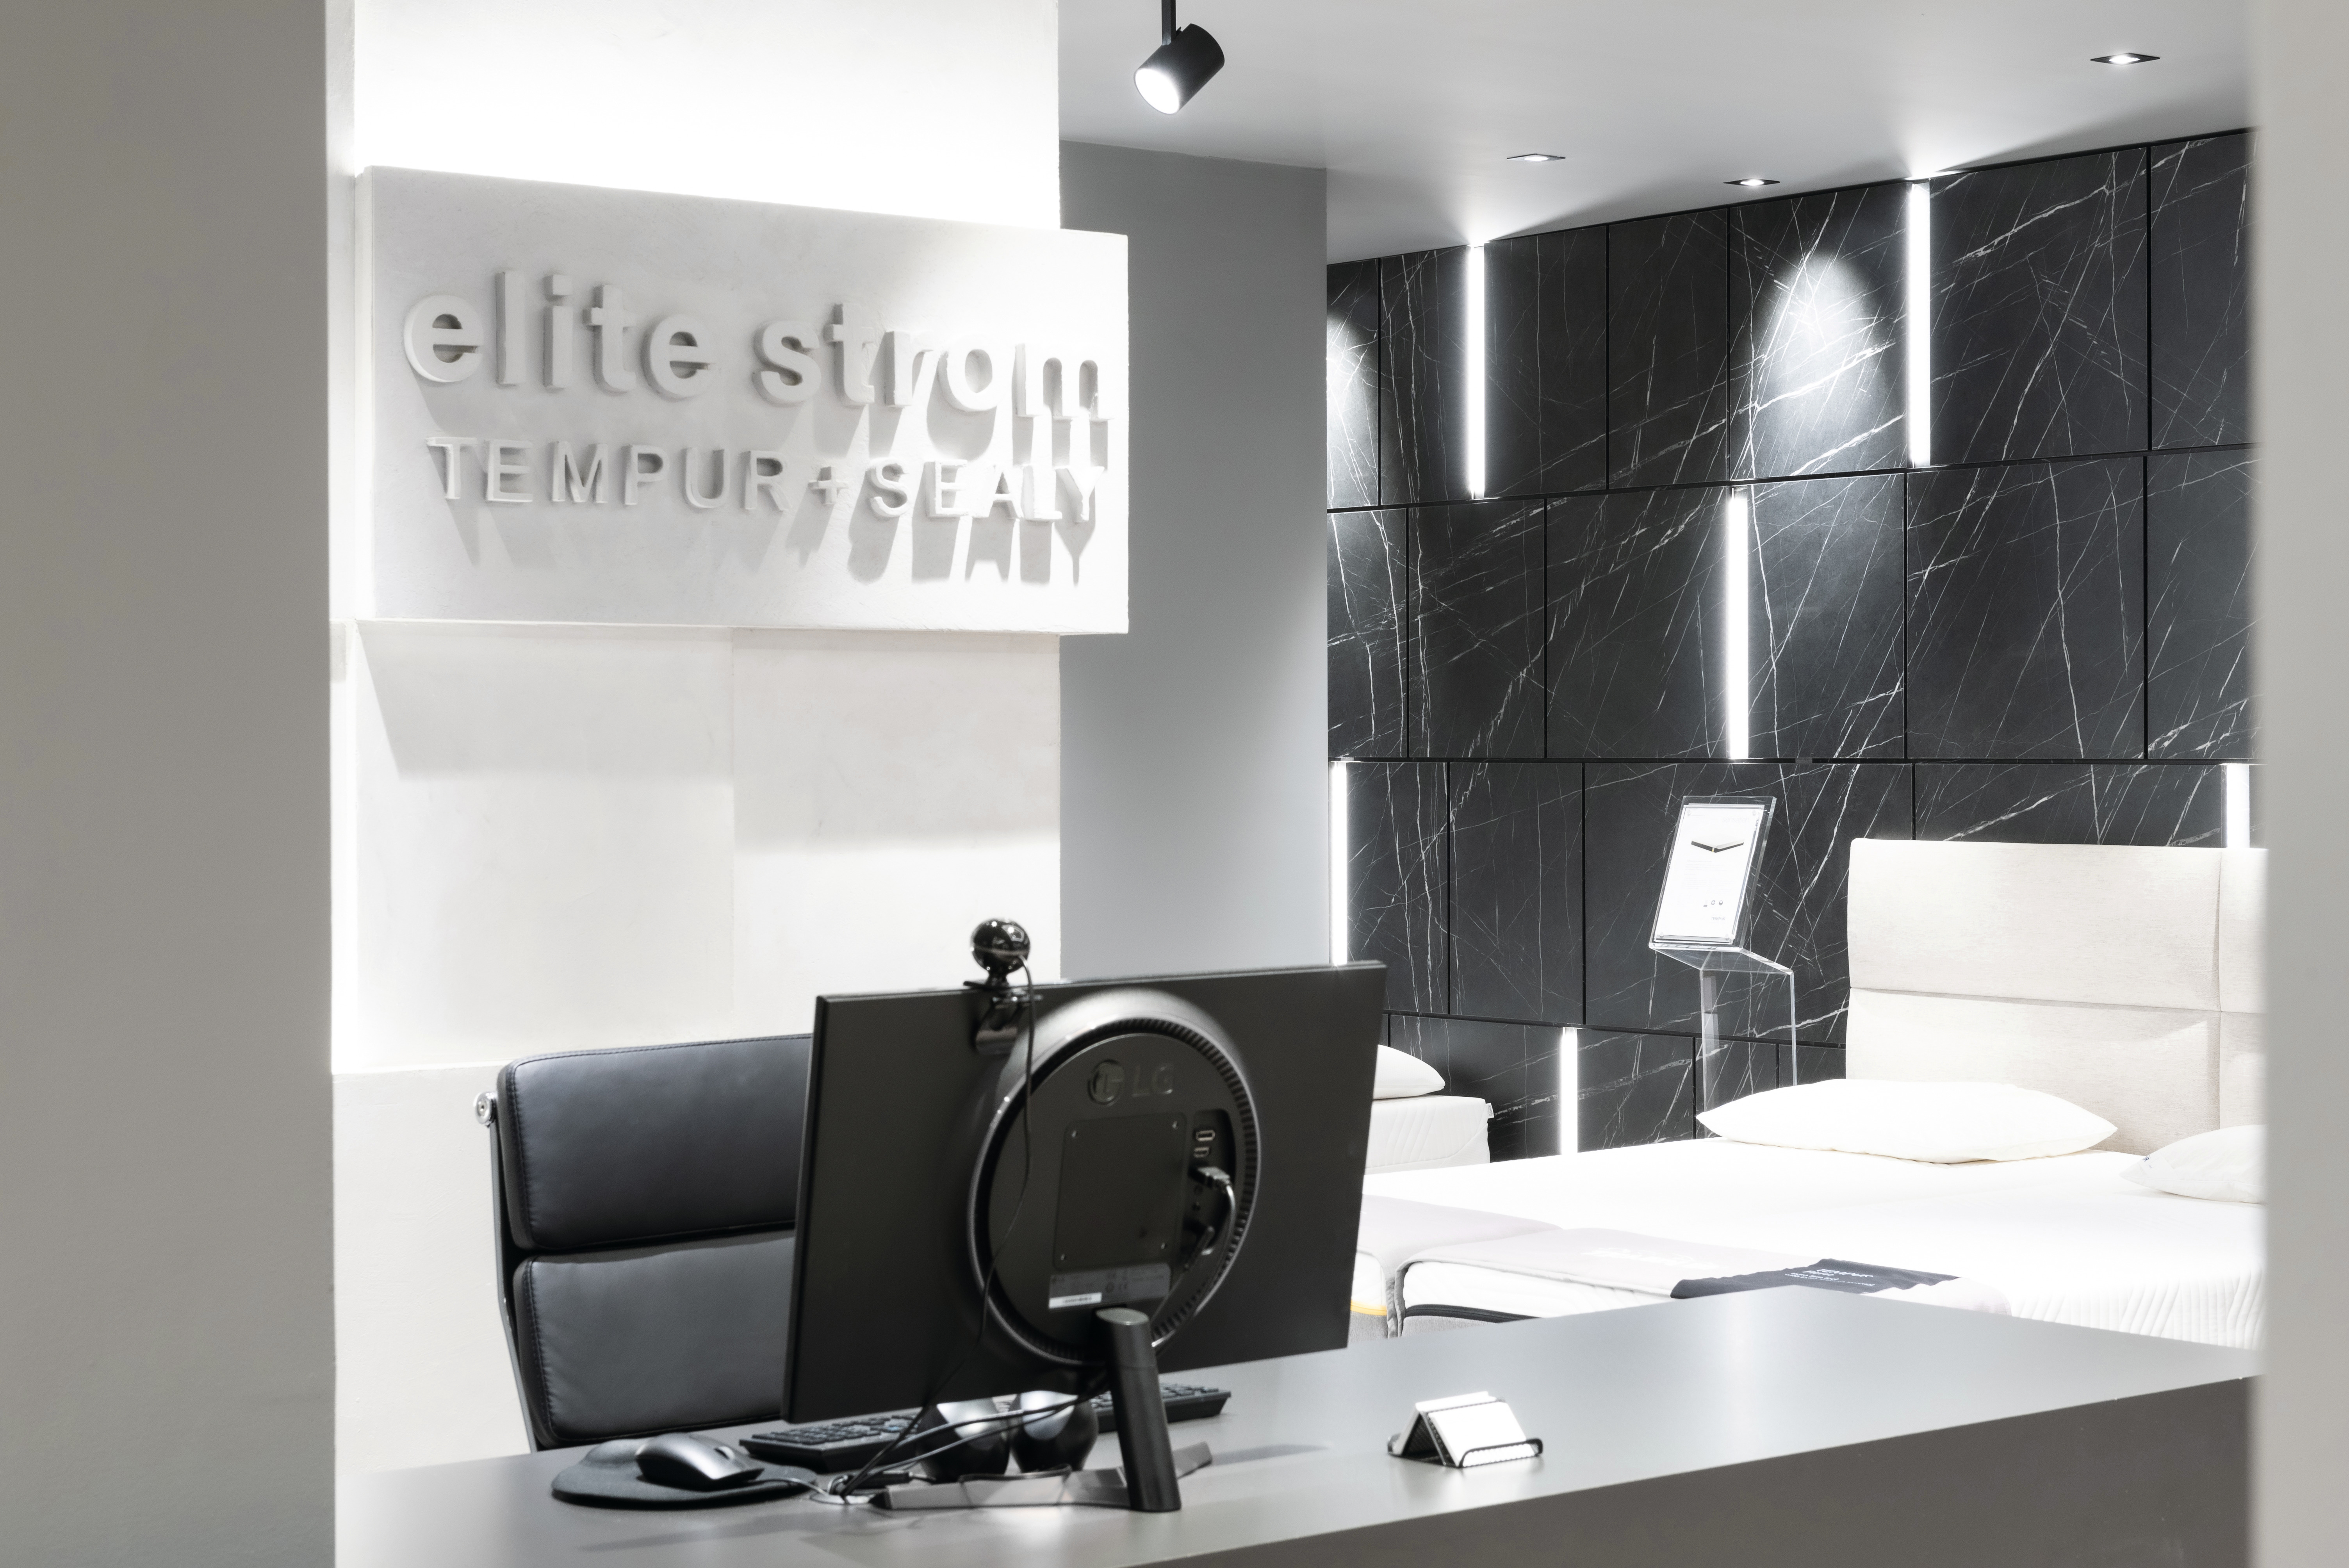 Le nouveau design du showroom impressionne par la finesse et l'ingéniosité des détails.